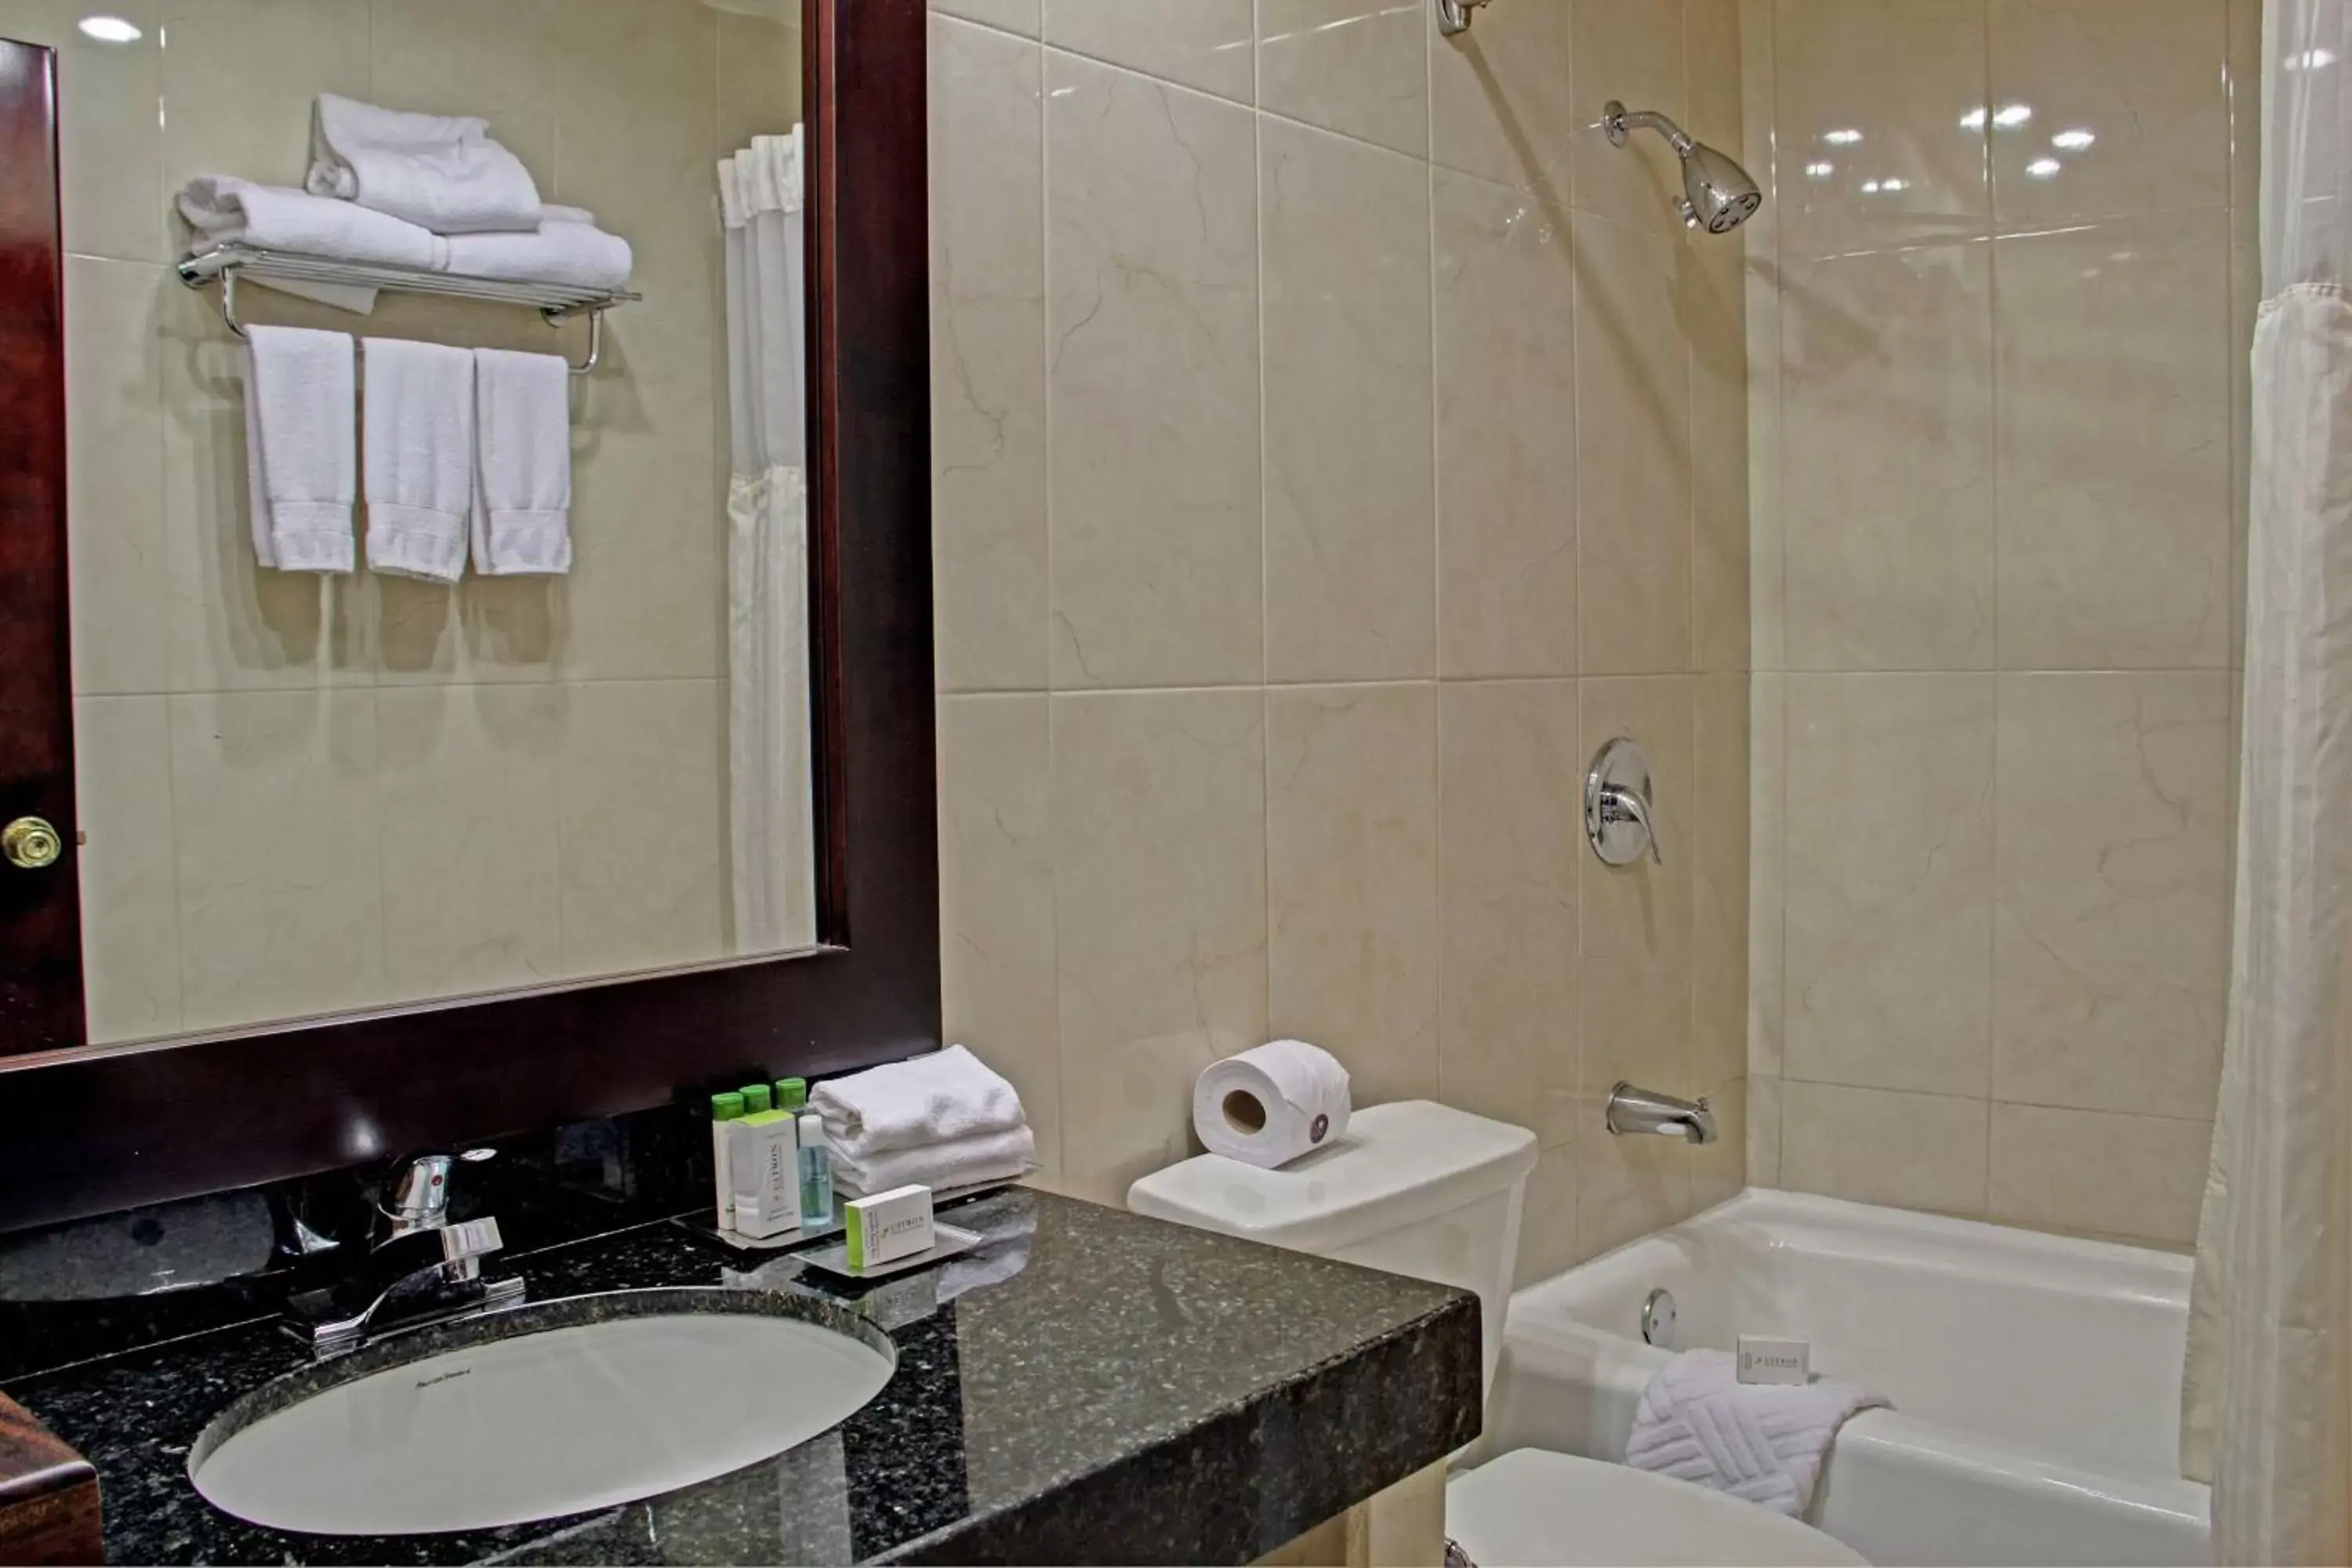 Bathroom in Hilton Cariari DoubleTree San Jose - Costa Rica